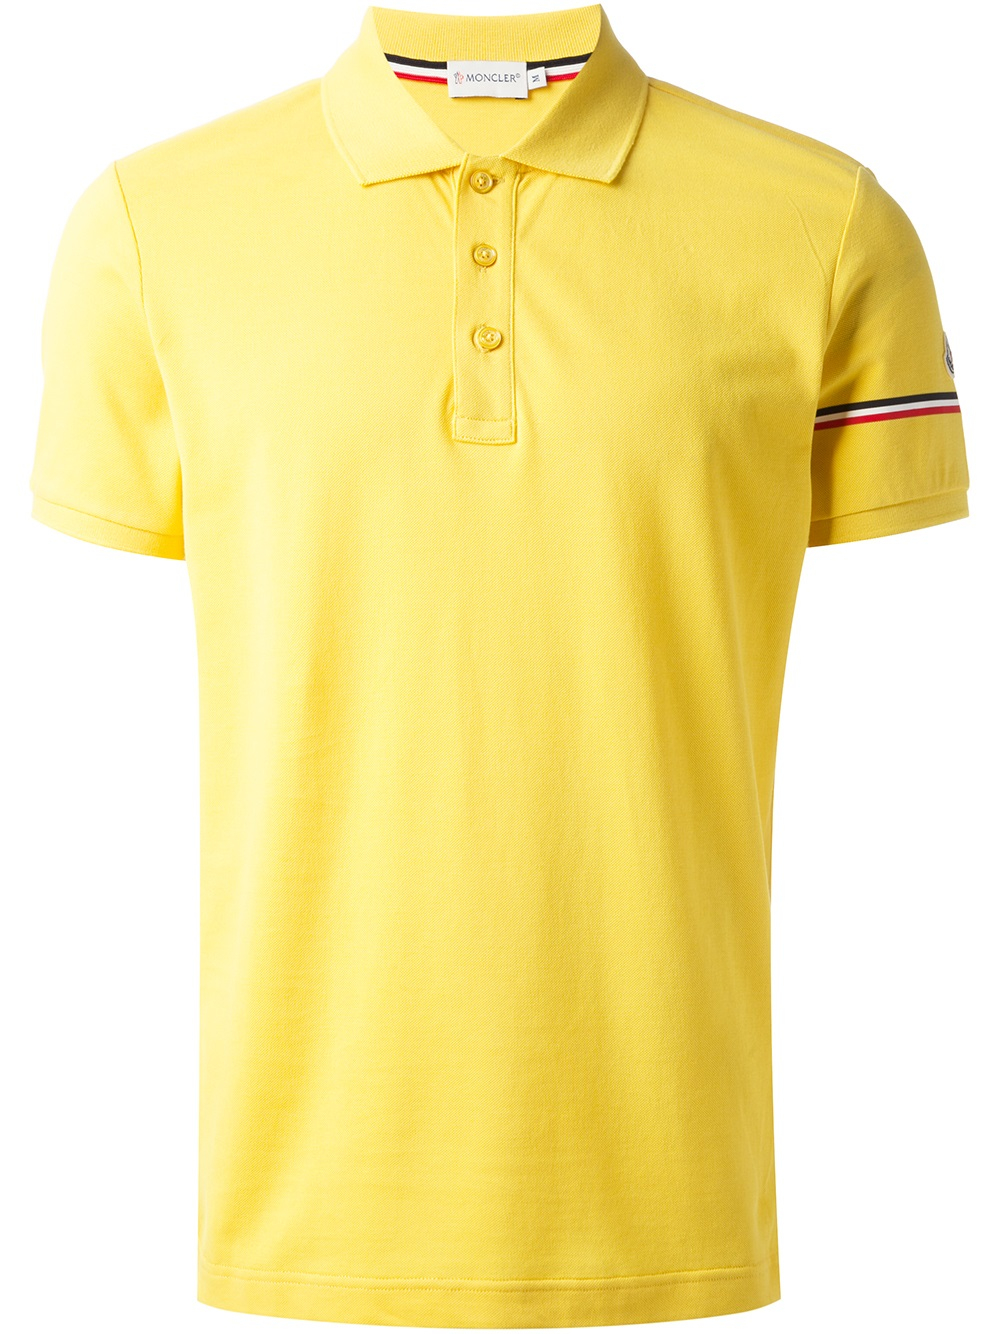 yellow moncler shirt